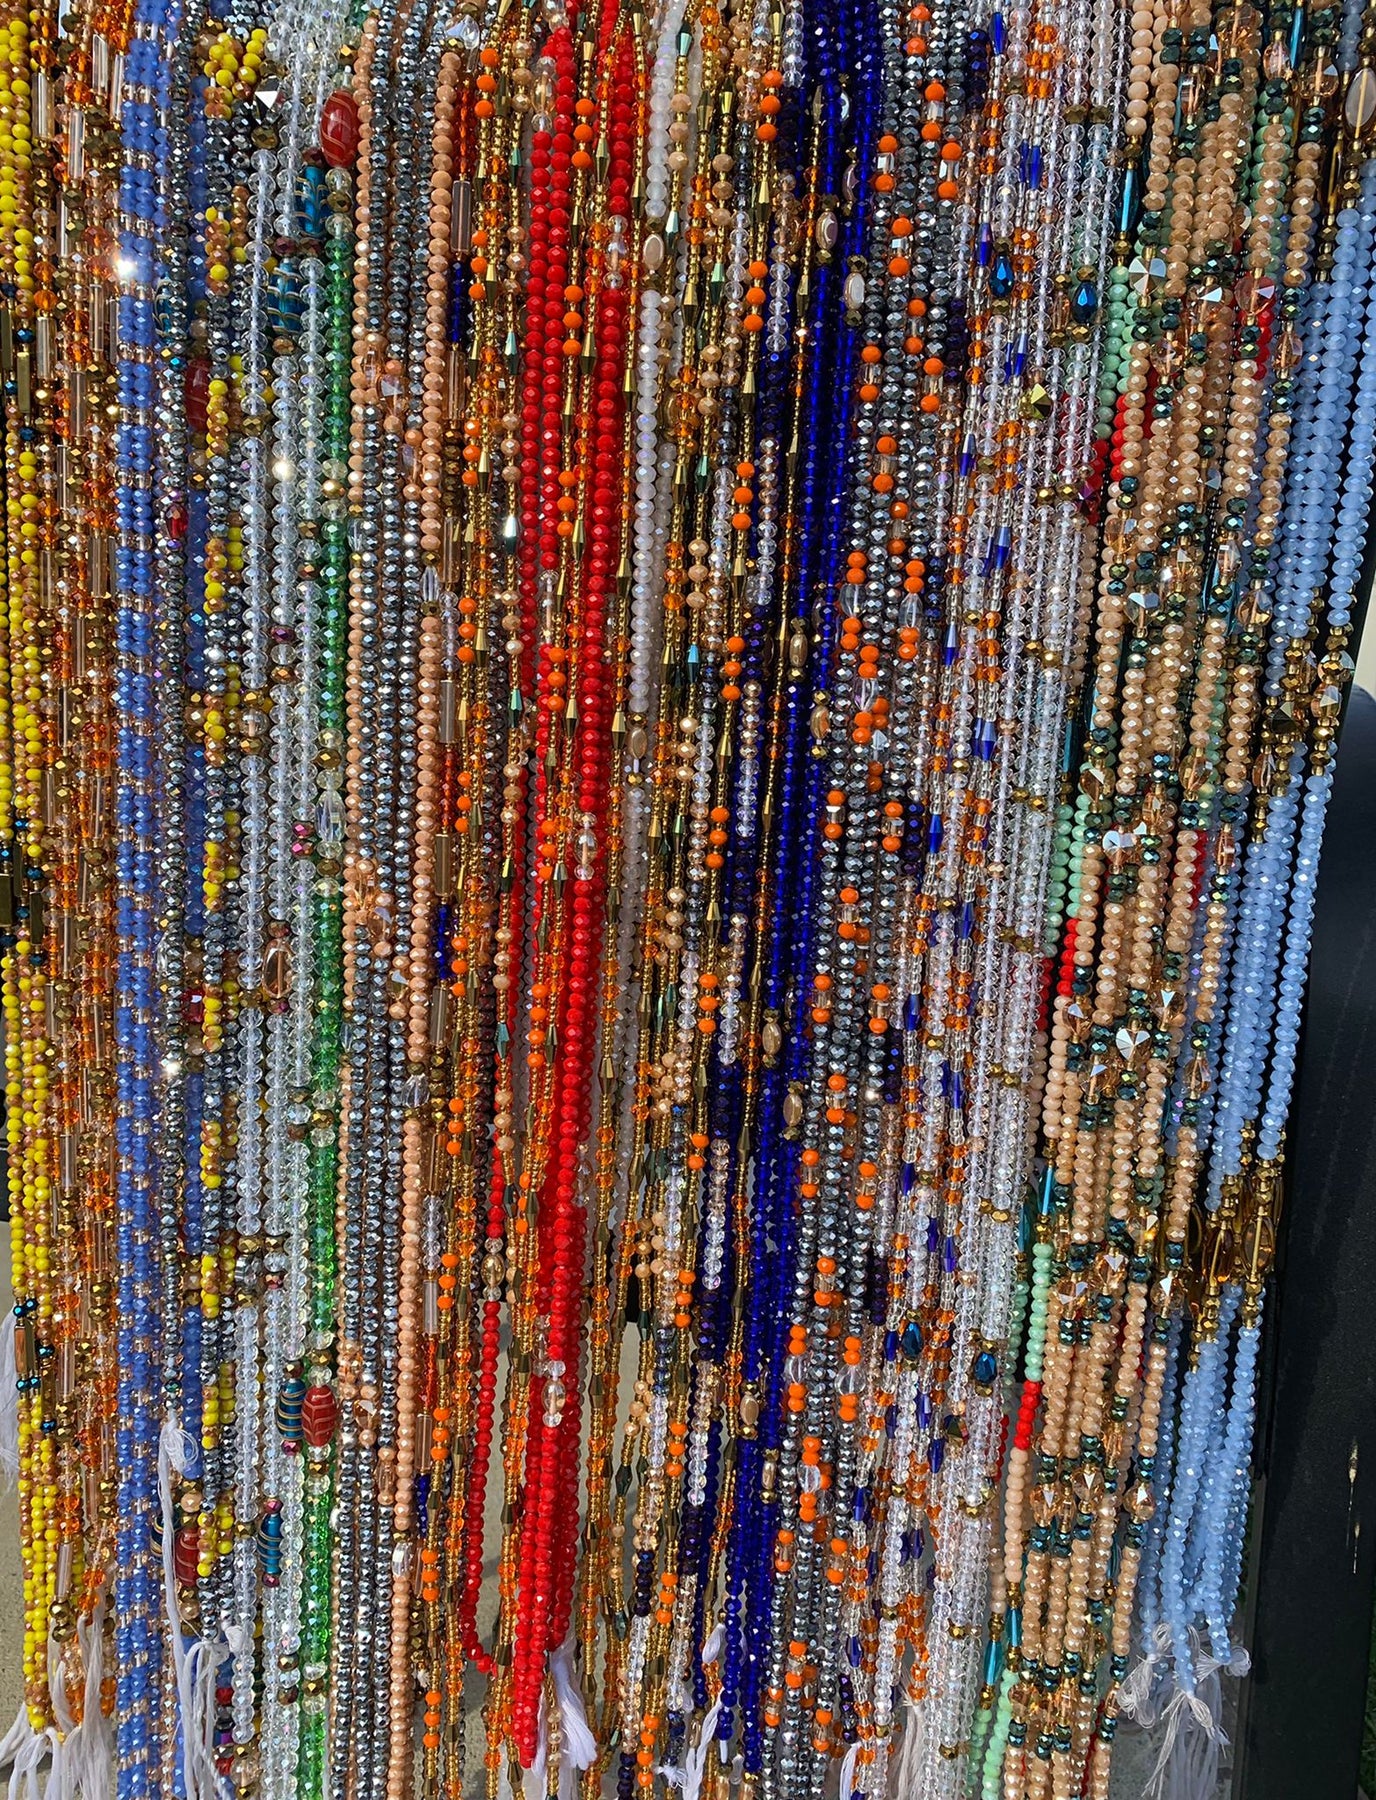 50 pcs,bulk, Wholesale African Beaded Bracelet for women,masa